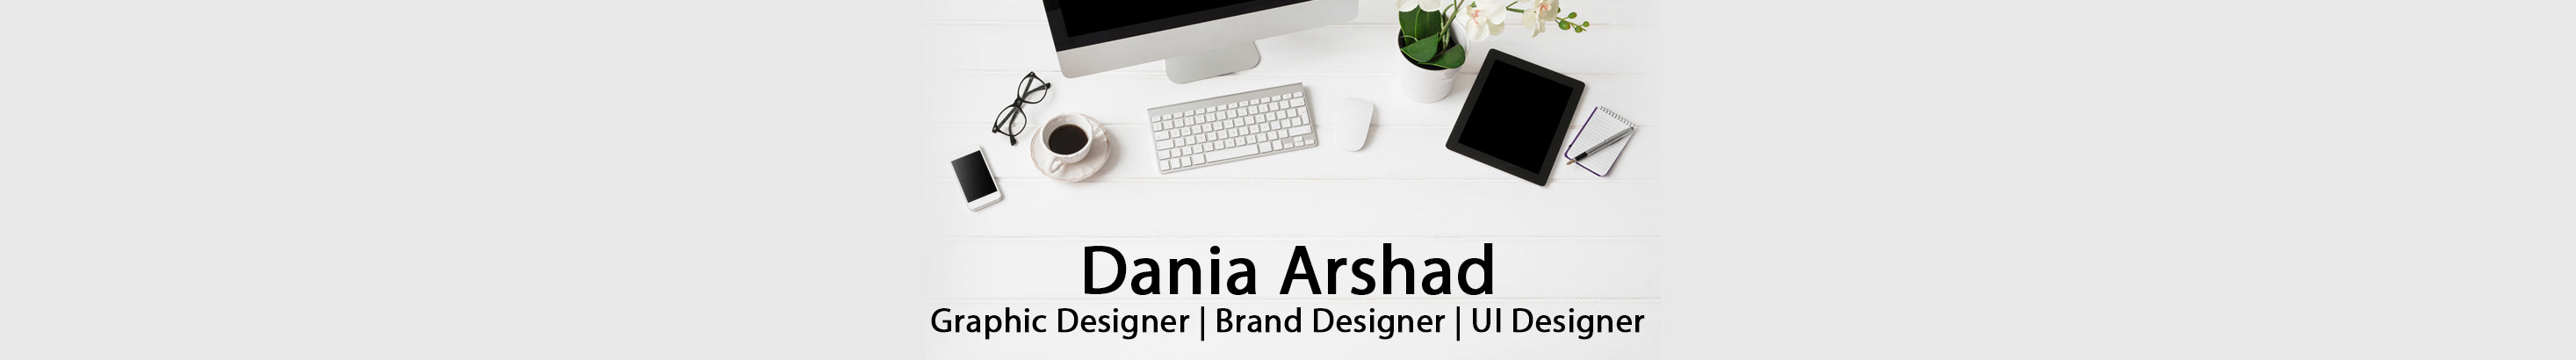 Dania Arshads profilbanner